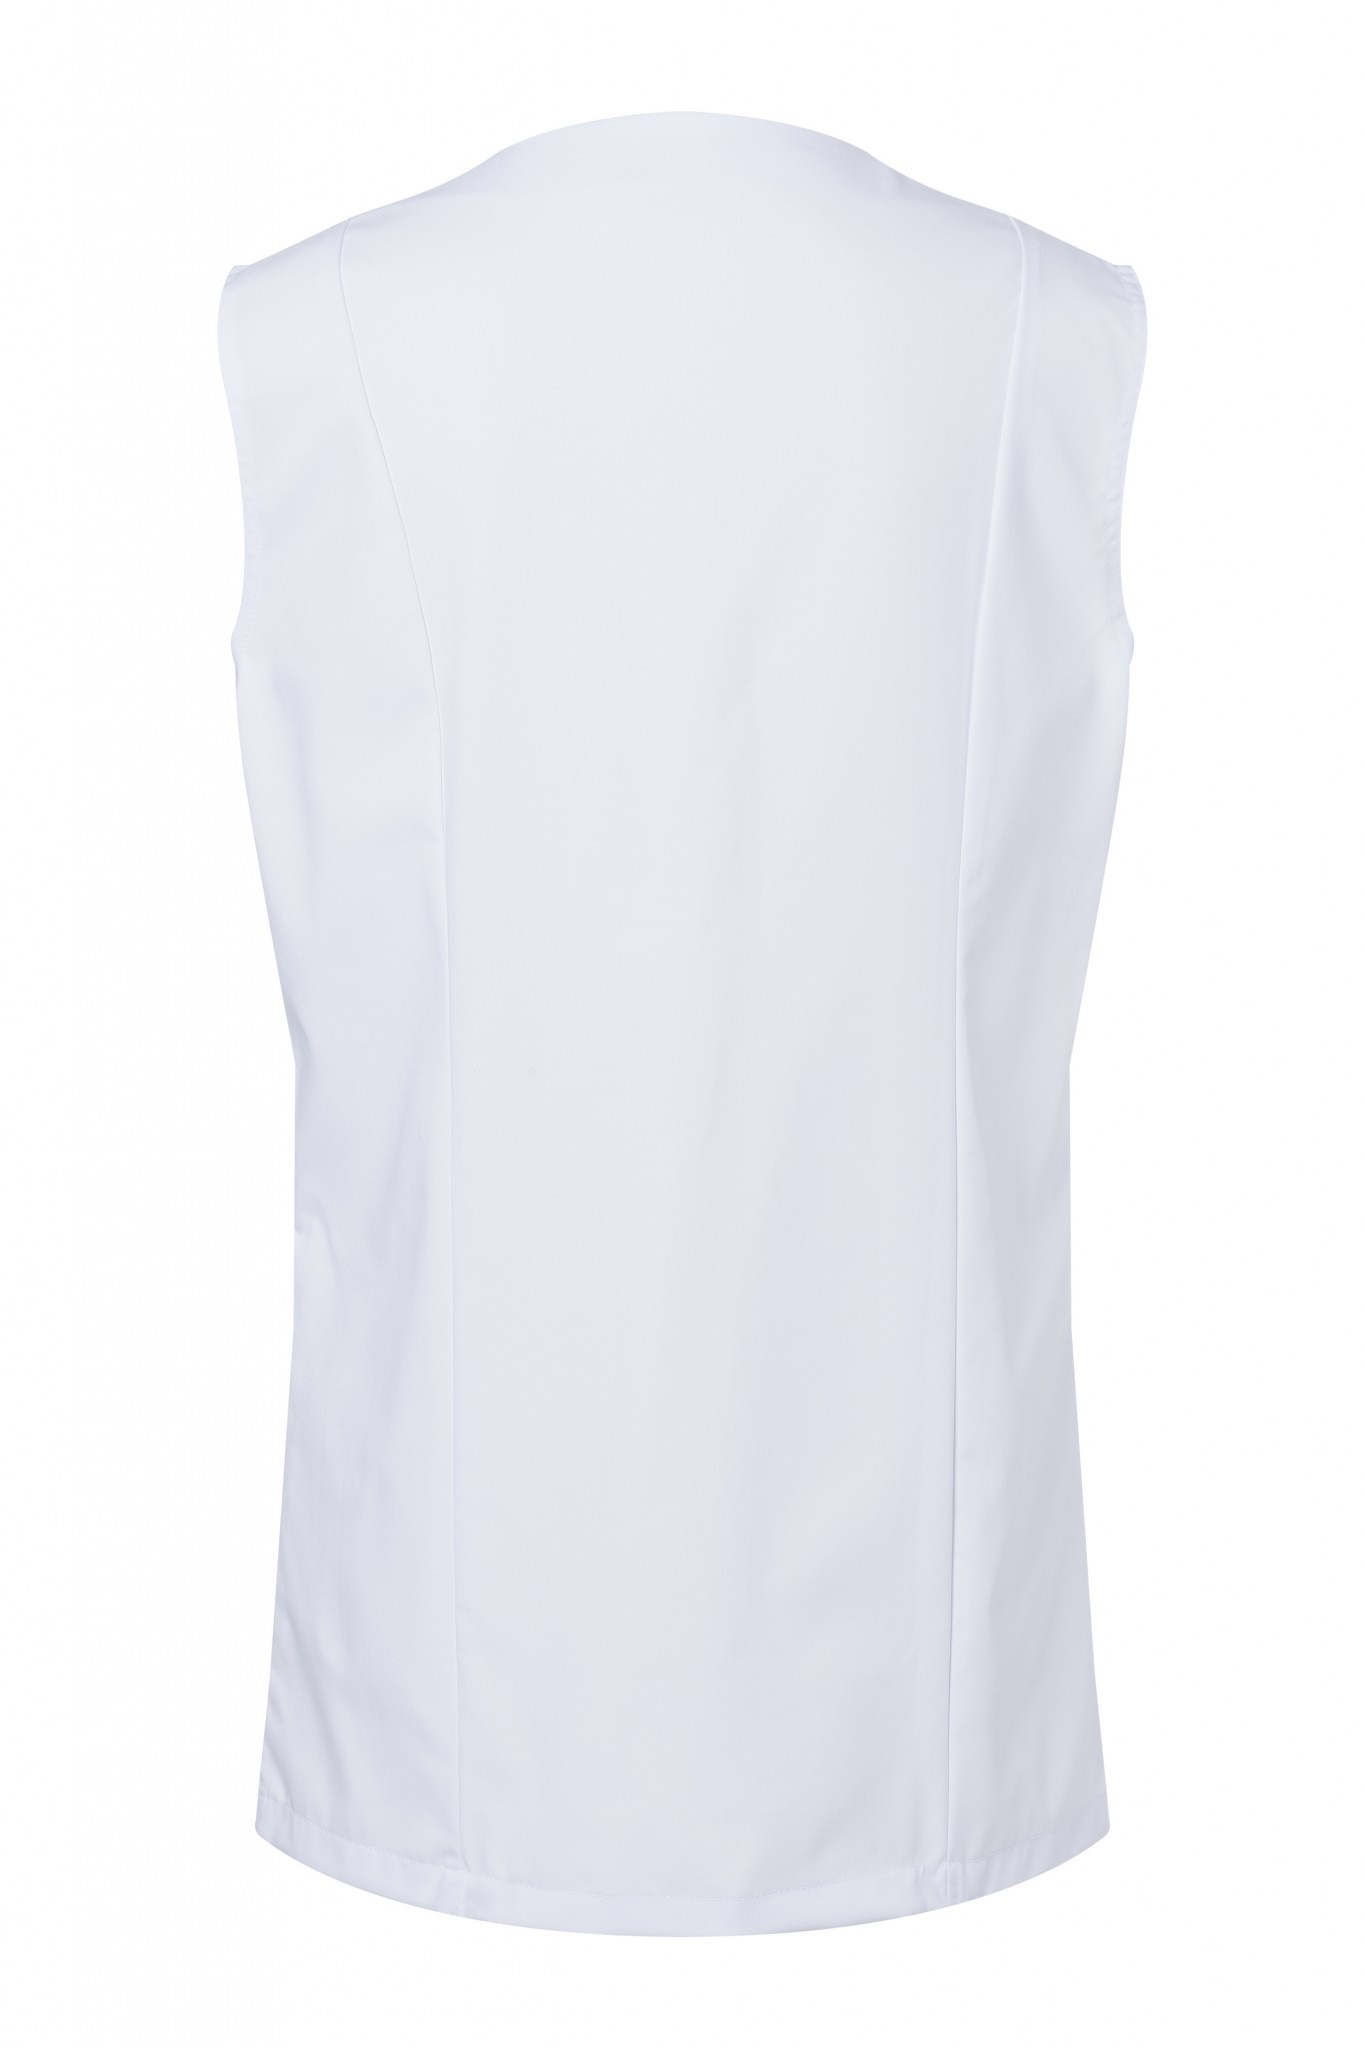 Damenkasack Basic | Weiß | 65% Polyester / 35% Baumwolle | Erhältlich in 6 Größen